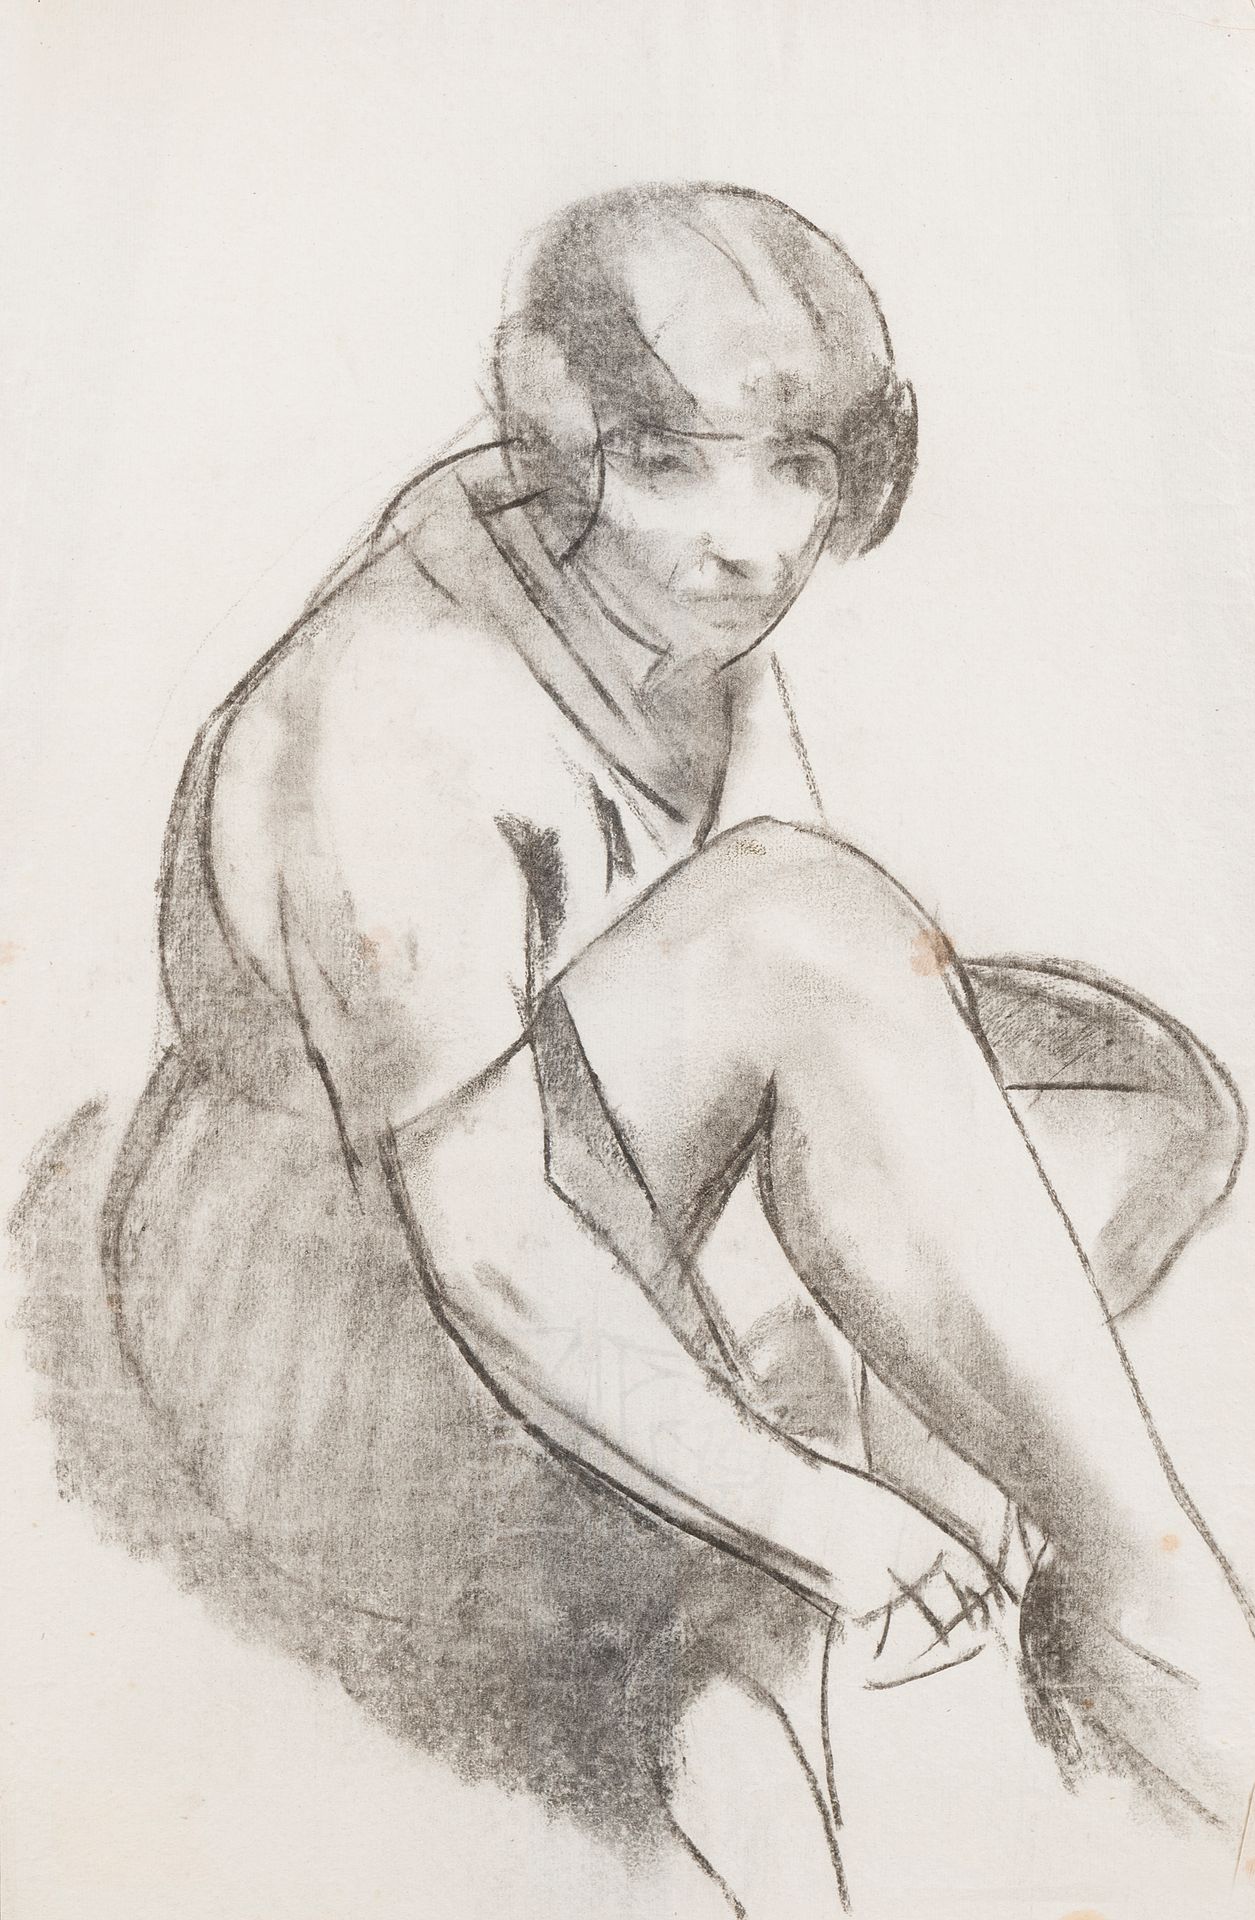 Null Charles PICART LE DOUX (1881-1959)
Sitzende Frau, 1924
Kohle
50 x 33 cm